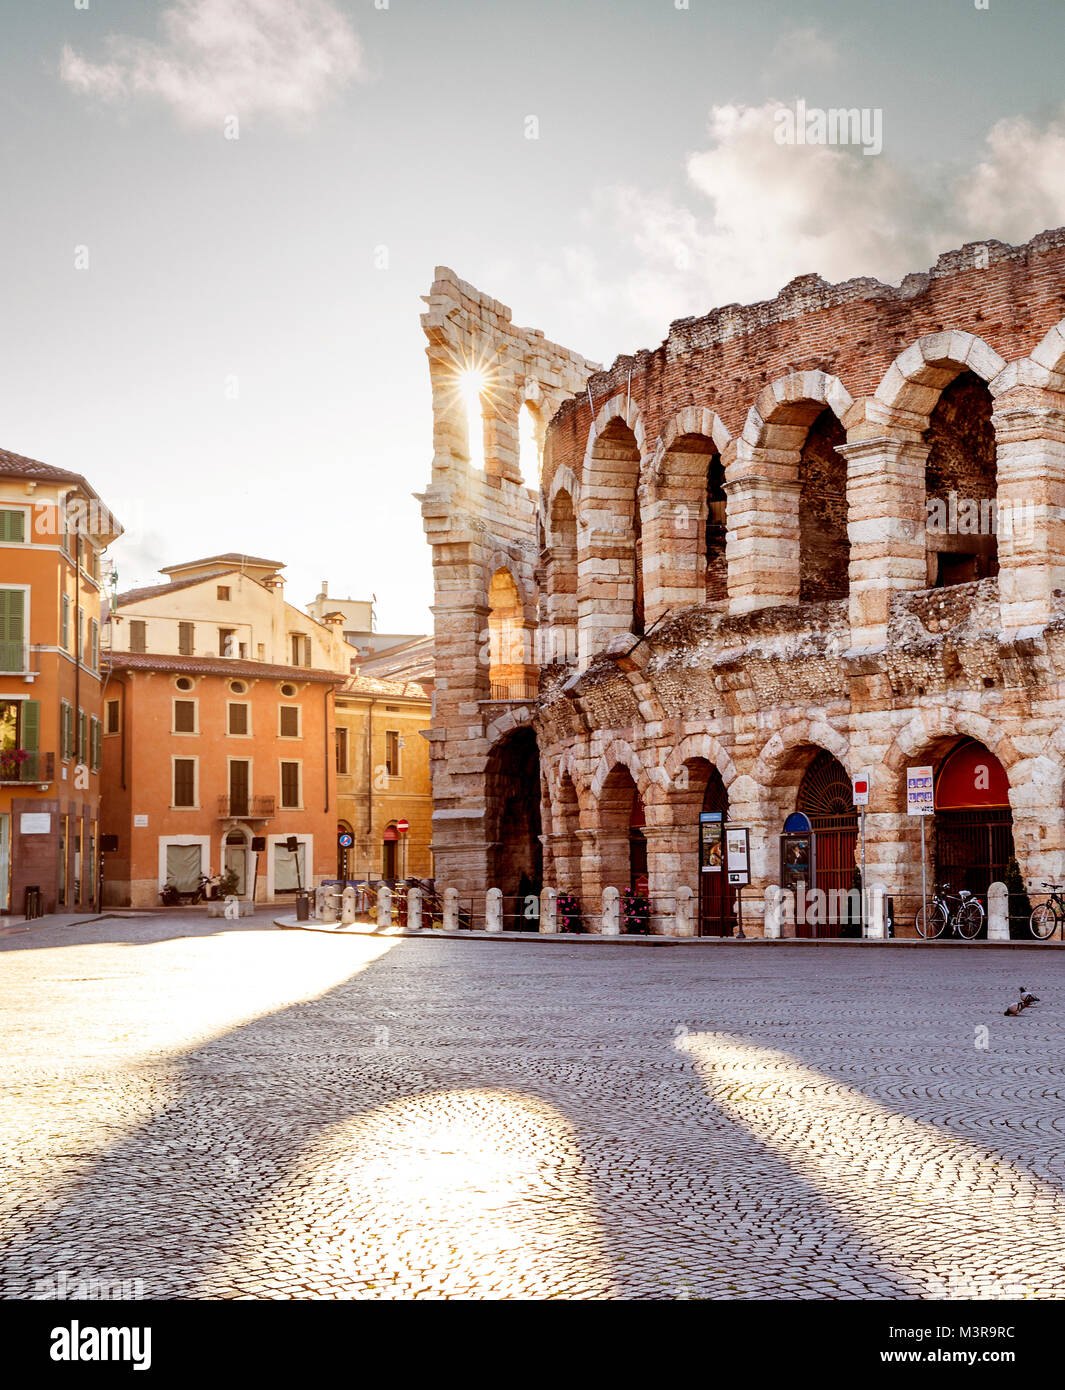 Colliseum in Verona city, Italy Stock Photo